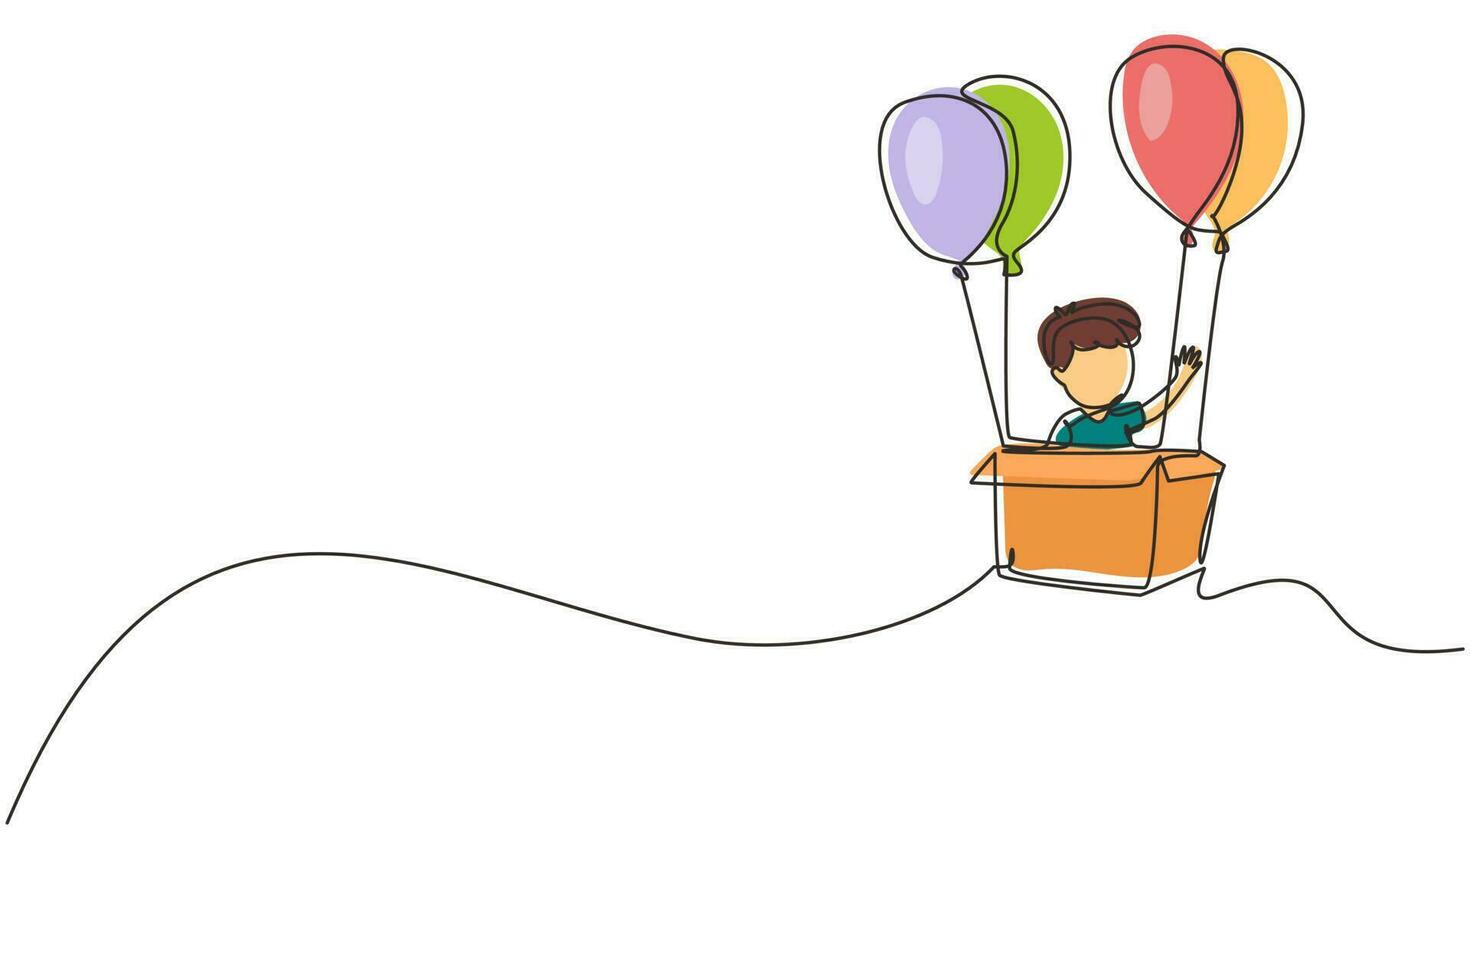 enkele een lijntekening schattige jongen zit in kartonnen doos met ballonnen. kleine piloot van heteluchtballon. creatief kindkarakter dat heteluchtballon speelt. ononderbroken lijntekening ontwerp grafische vector